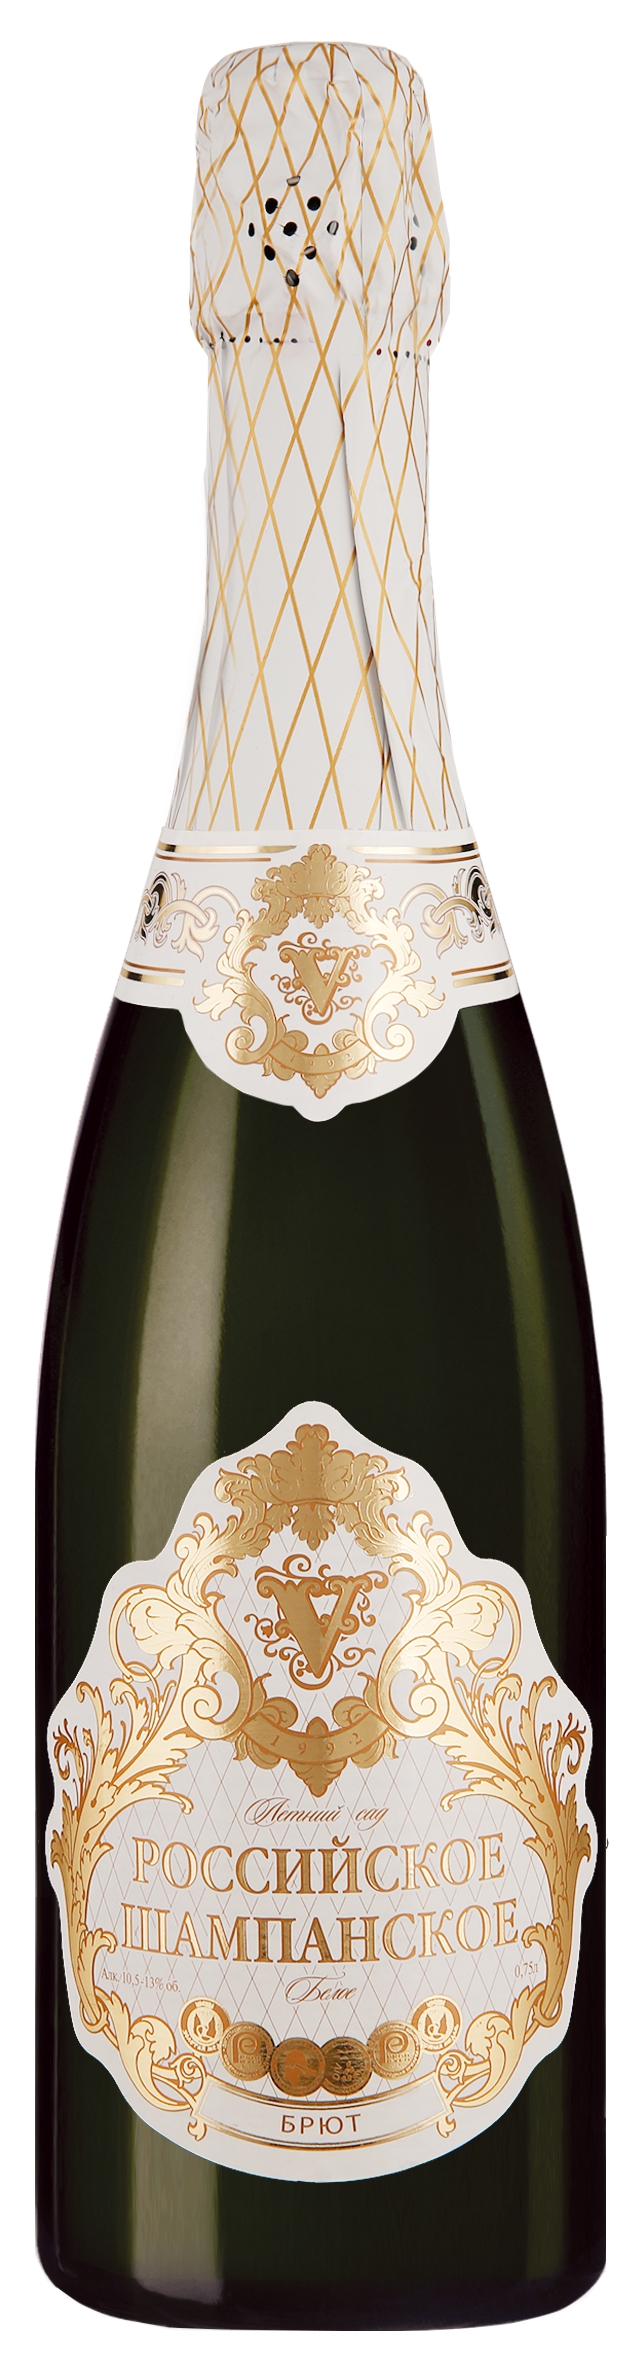 Российское шампанское белое брют "Летний сад" - шампанское с хорошим вкусом